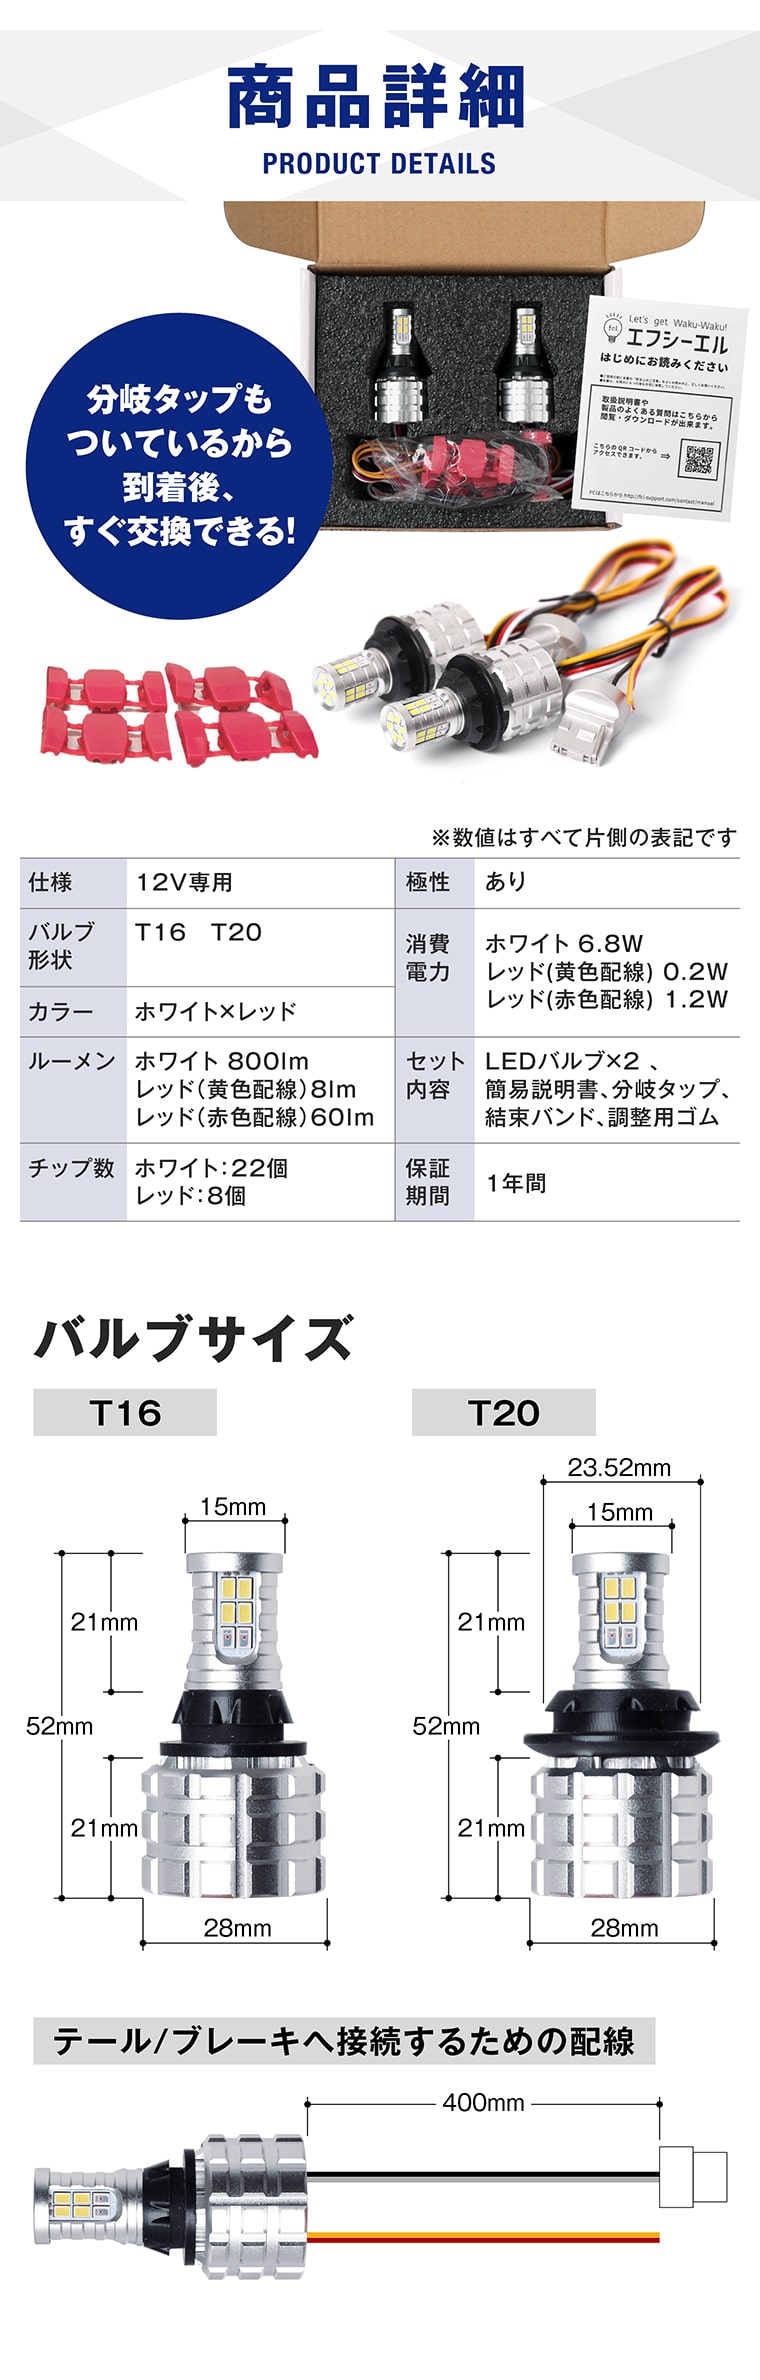 商品詳細 T16 T20 分岐タップ ホワイト 800lm レッド 60lm 簡易説明書 バルブサイズ